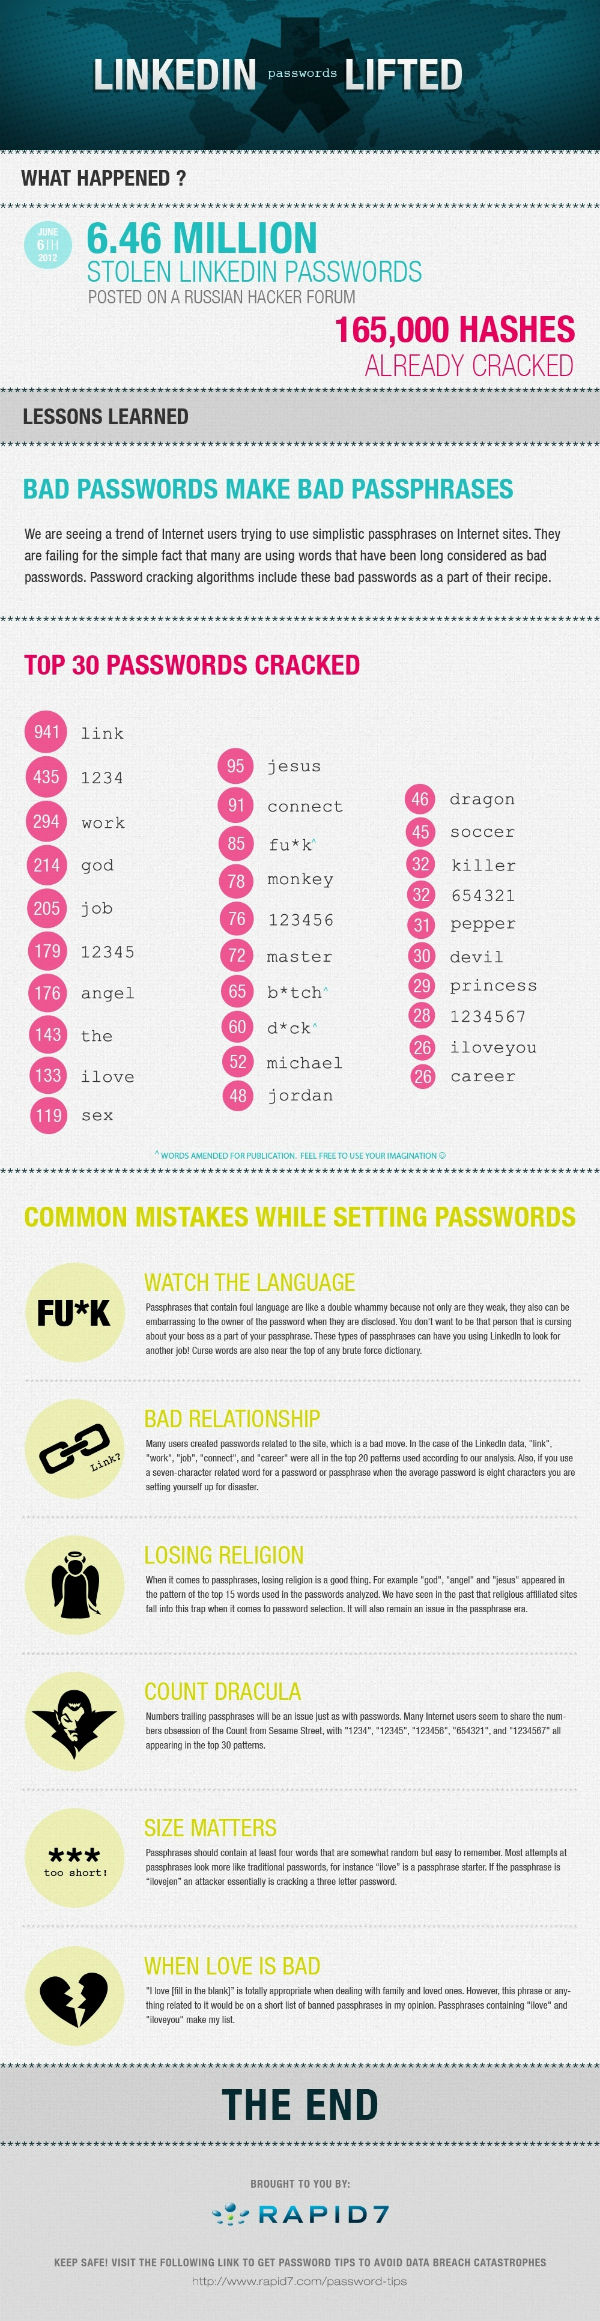 top stolen passwords on linked in